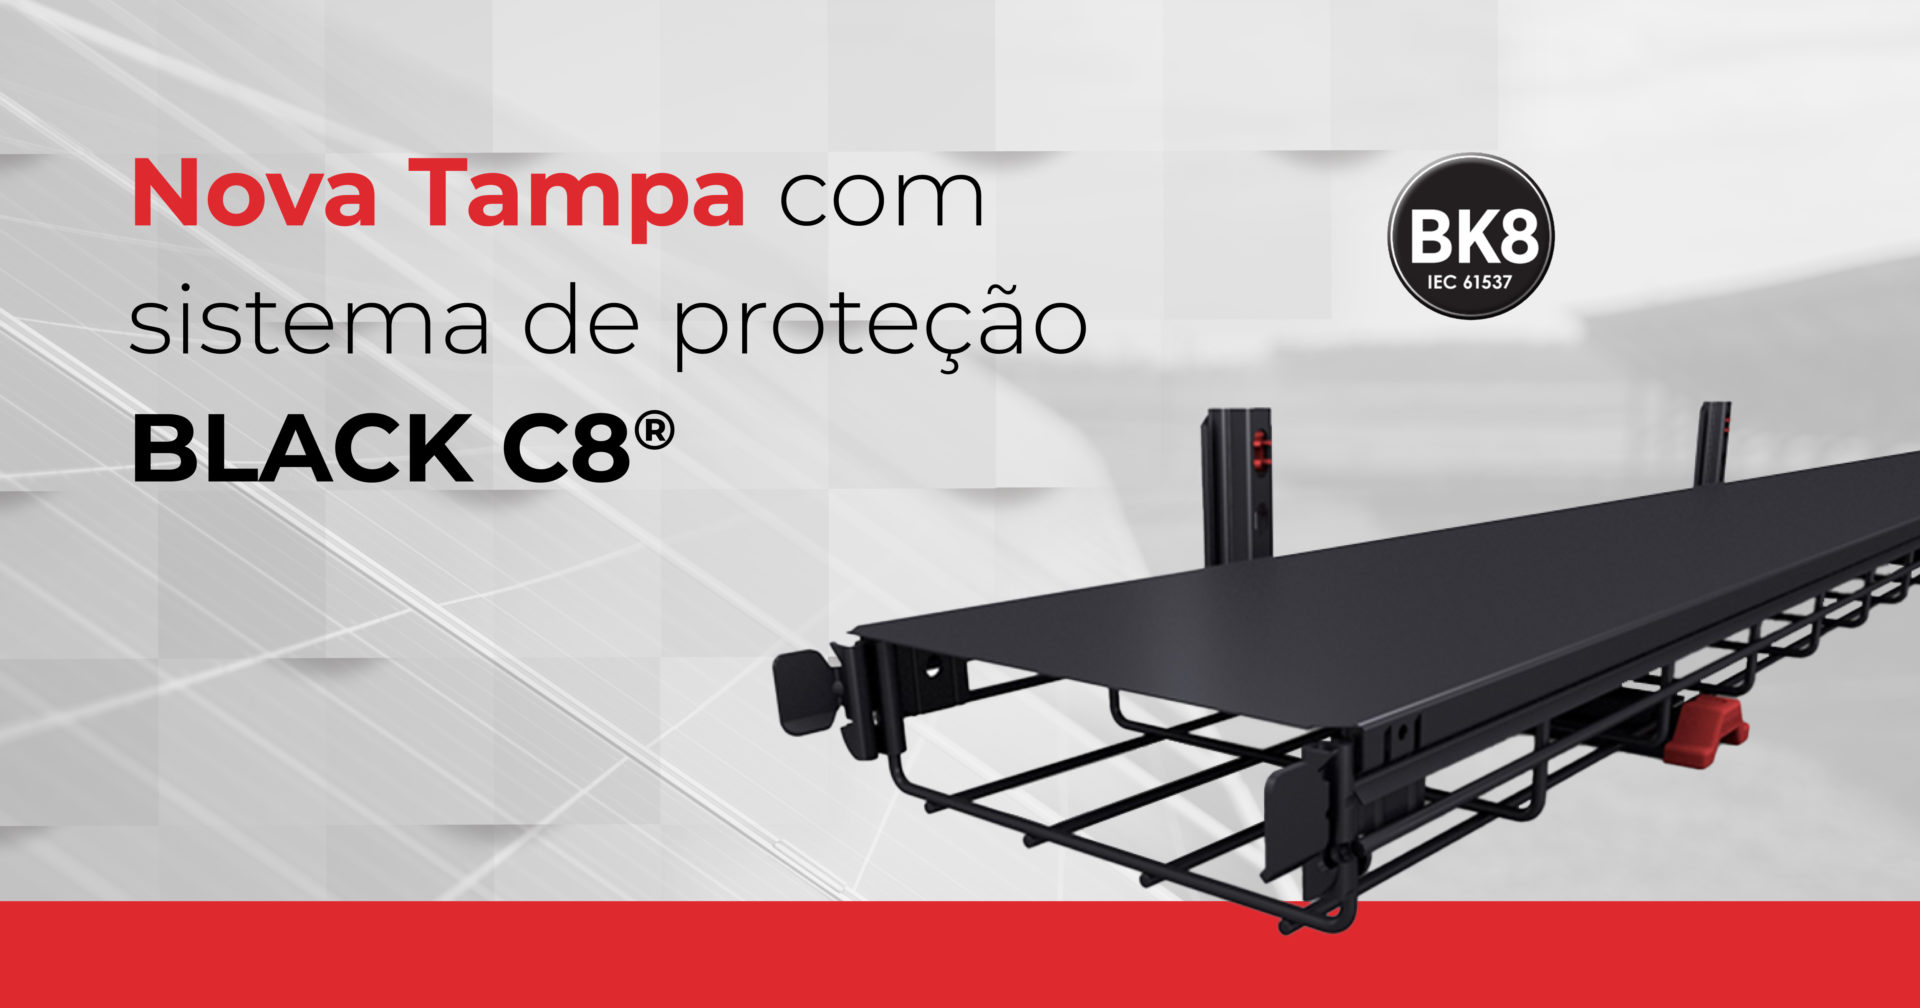 A Pemsa apresenta a Nova Tampa com sistema de proteção BLACK C8® para calhas de arame com alta resistência à corrosão